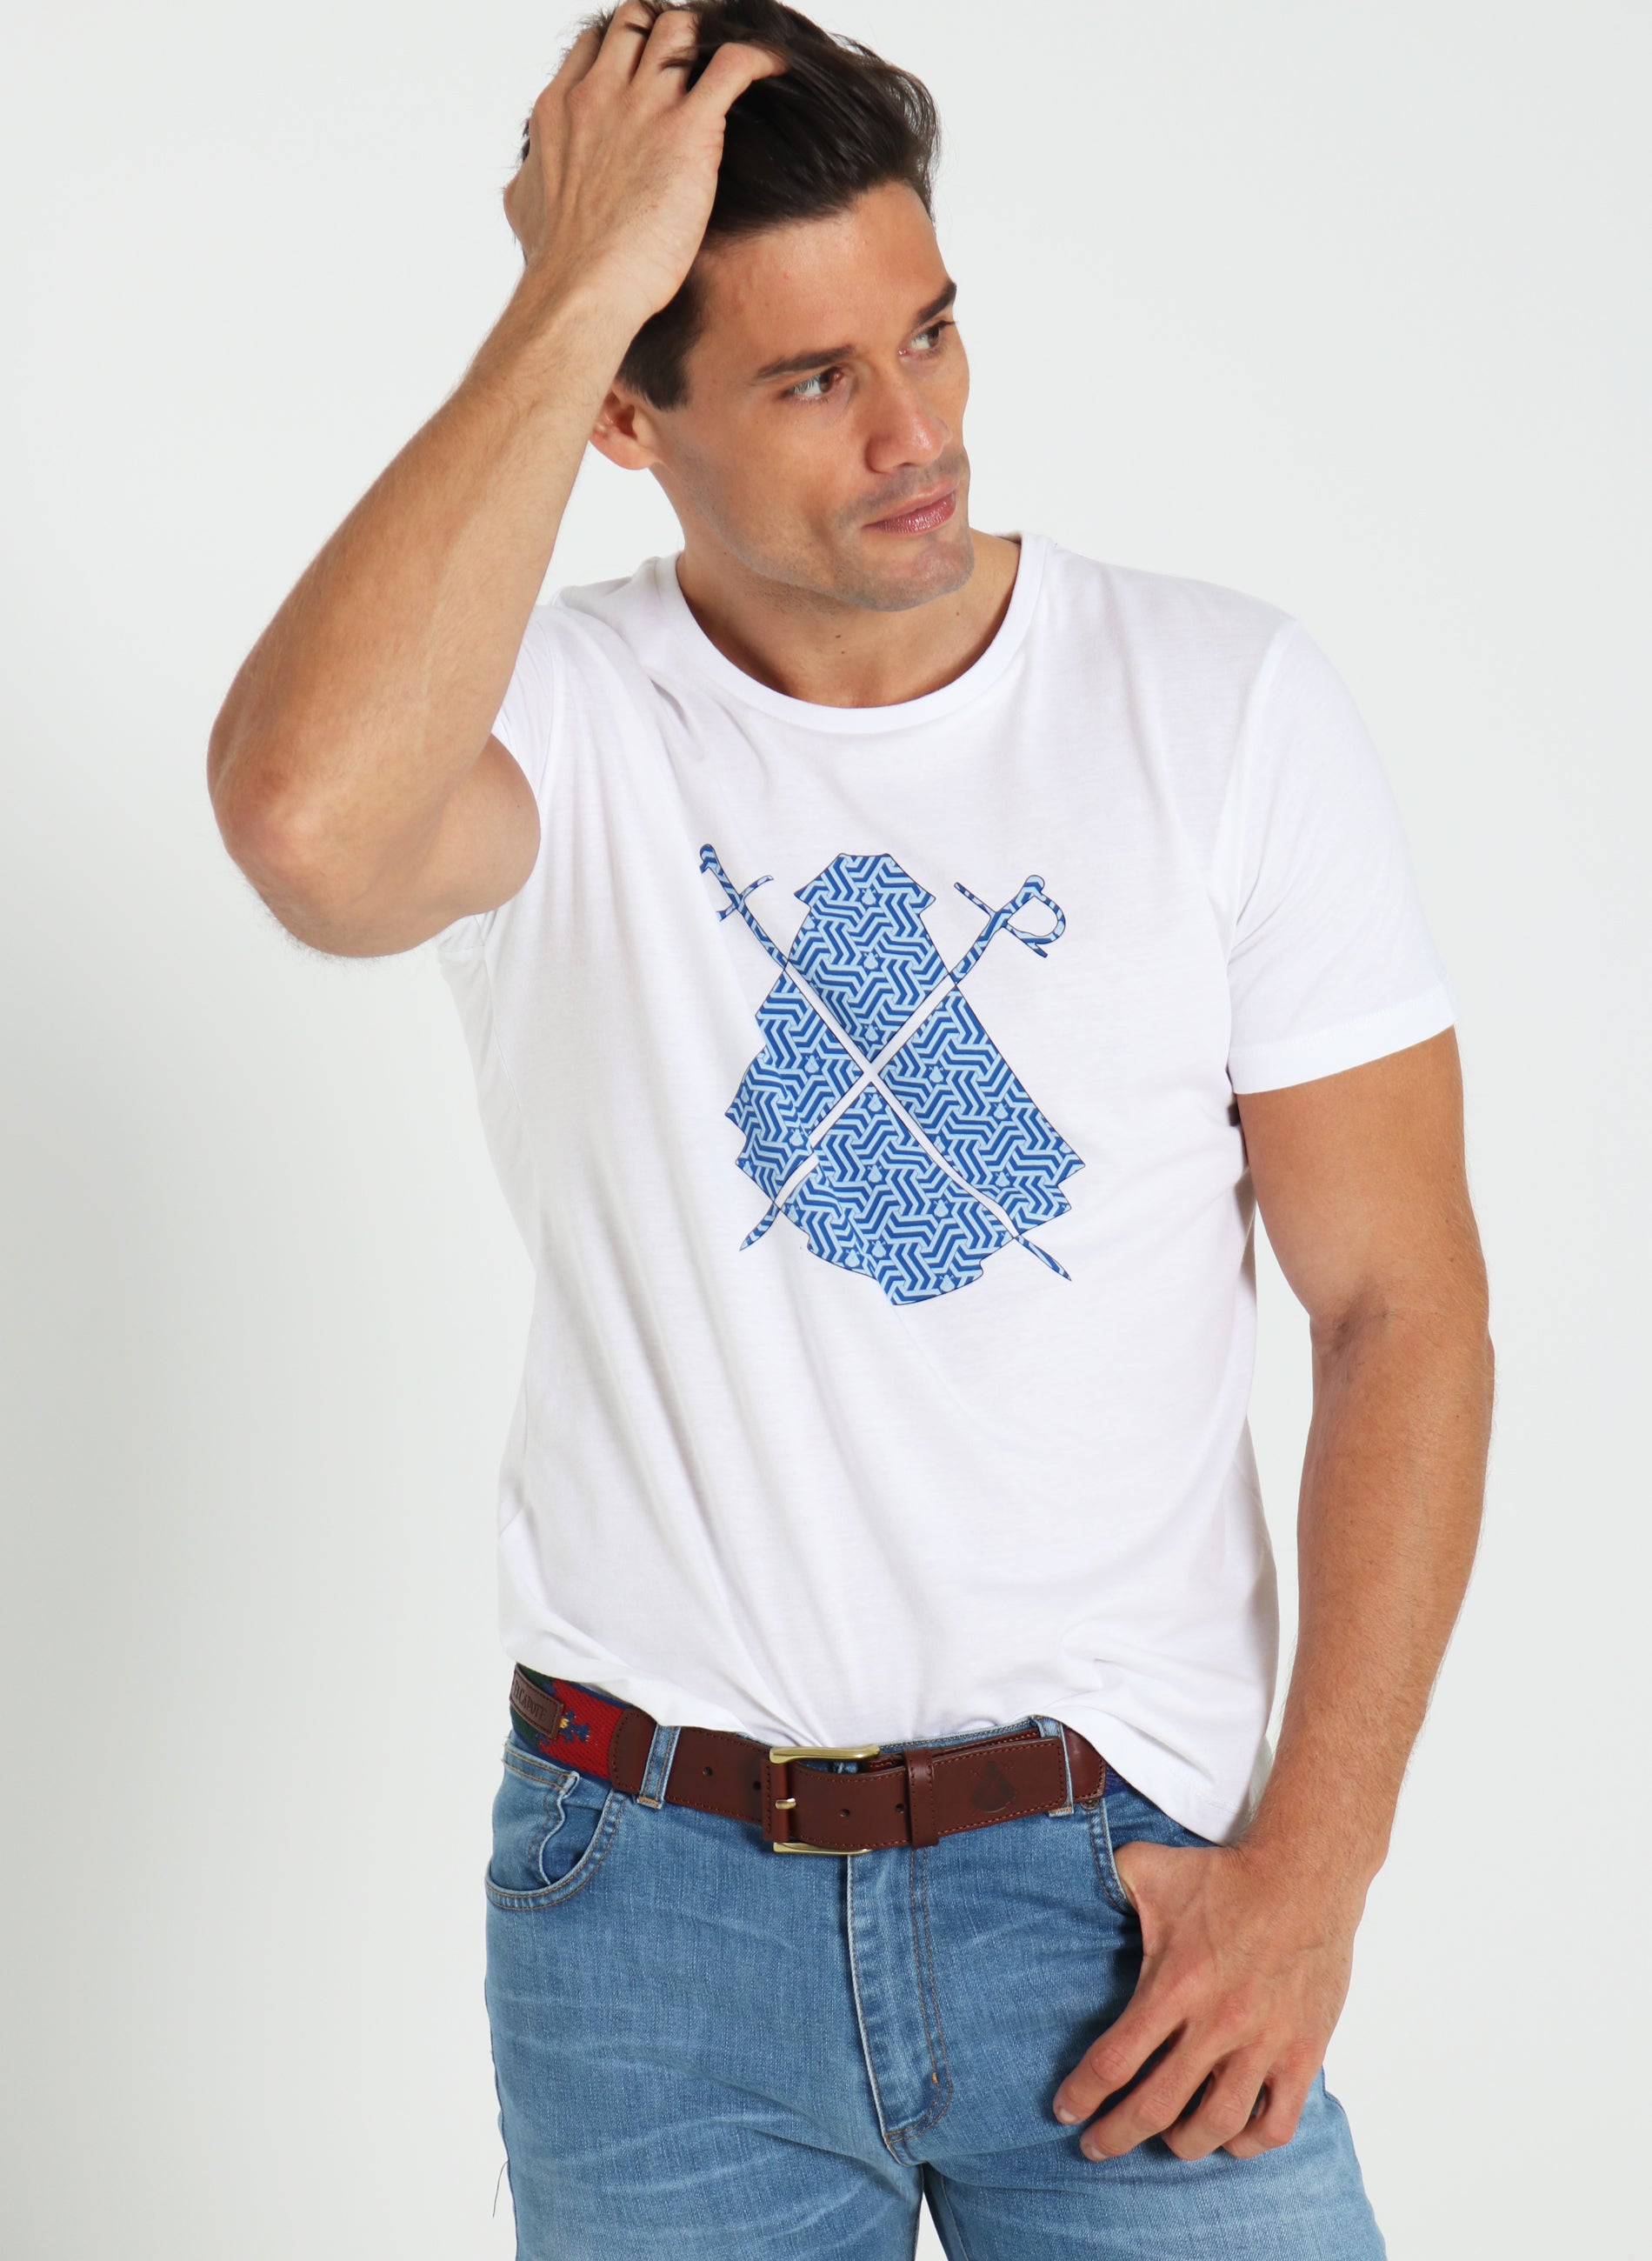 Weißes T-Shirt für Männer Multilogos